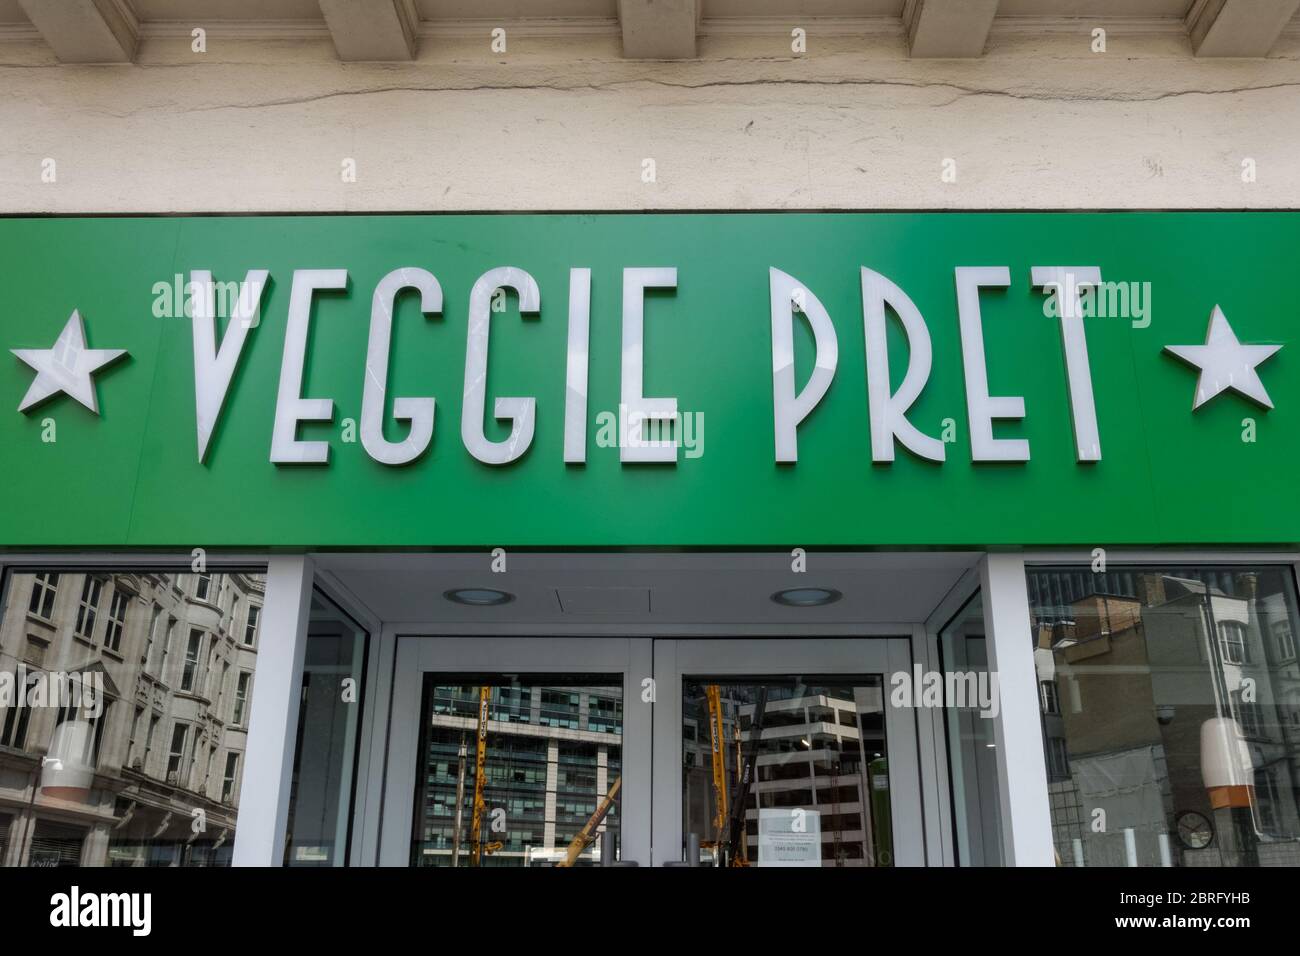 Veggie PRET, branche végétarienne et végétalienne, dans la ville de Londres, Angleterre, Royaume-Uni Banque D'Images